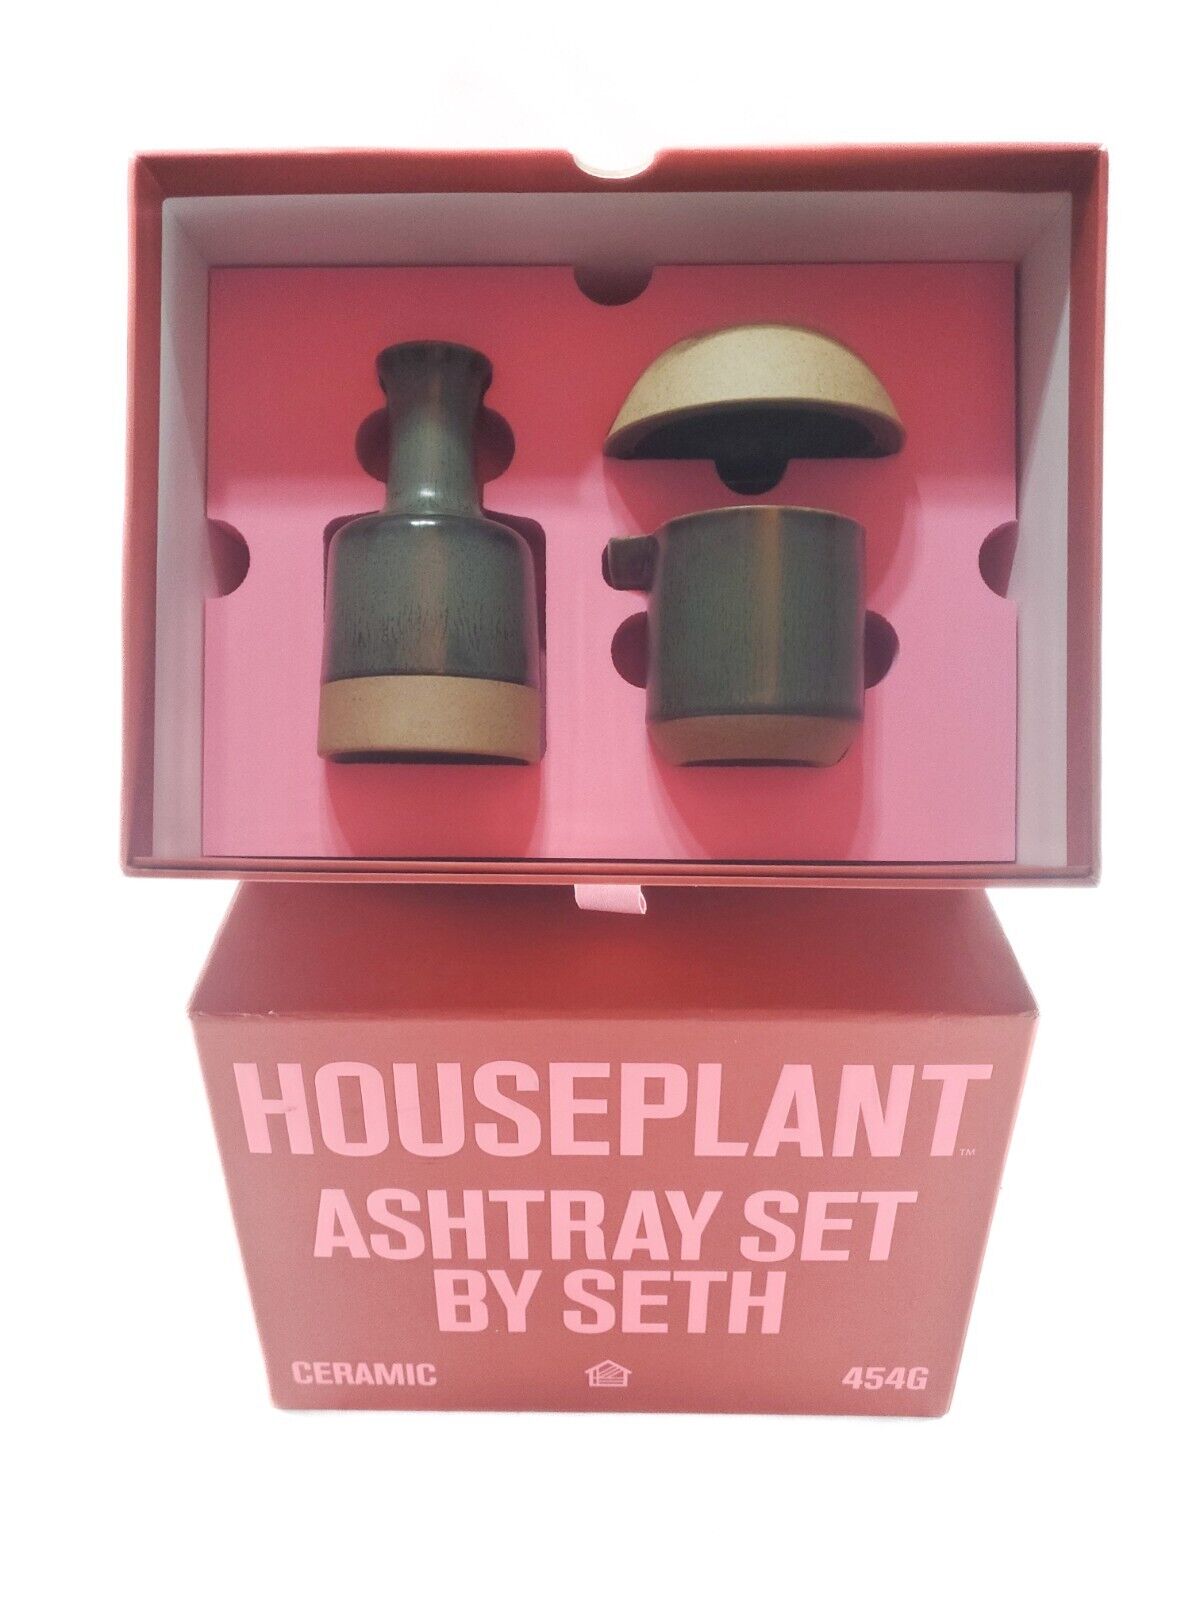 Houseplant by Seth Rogen Ceramic Ashtray Vase Set Sand New In Box 2020